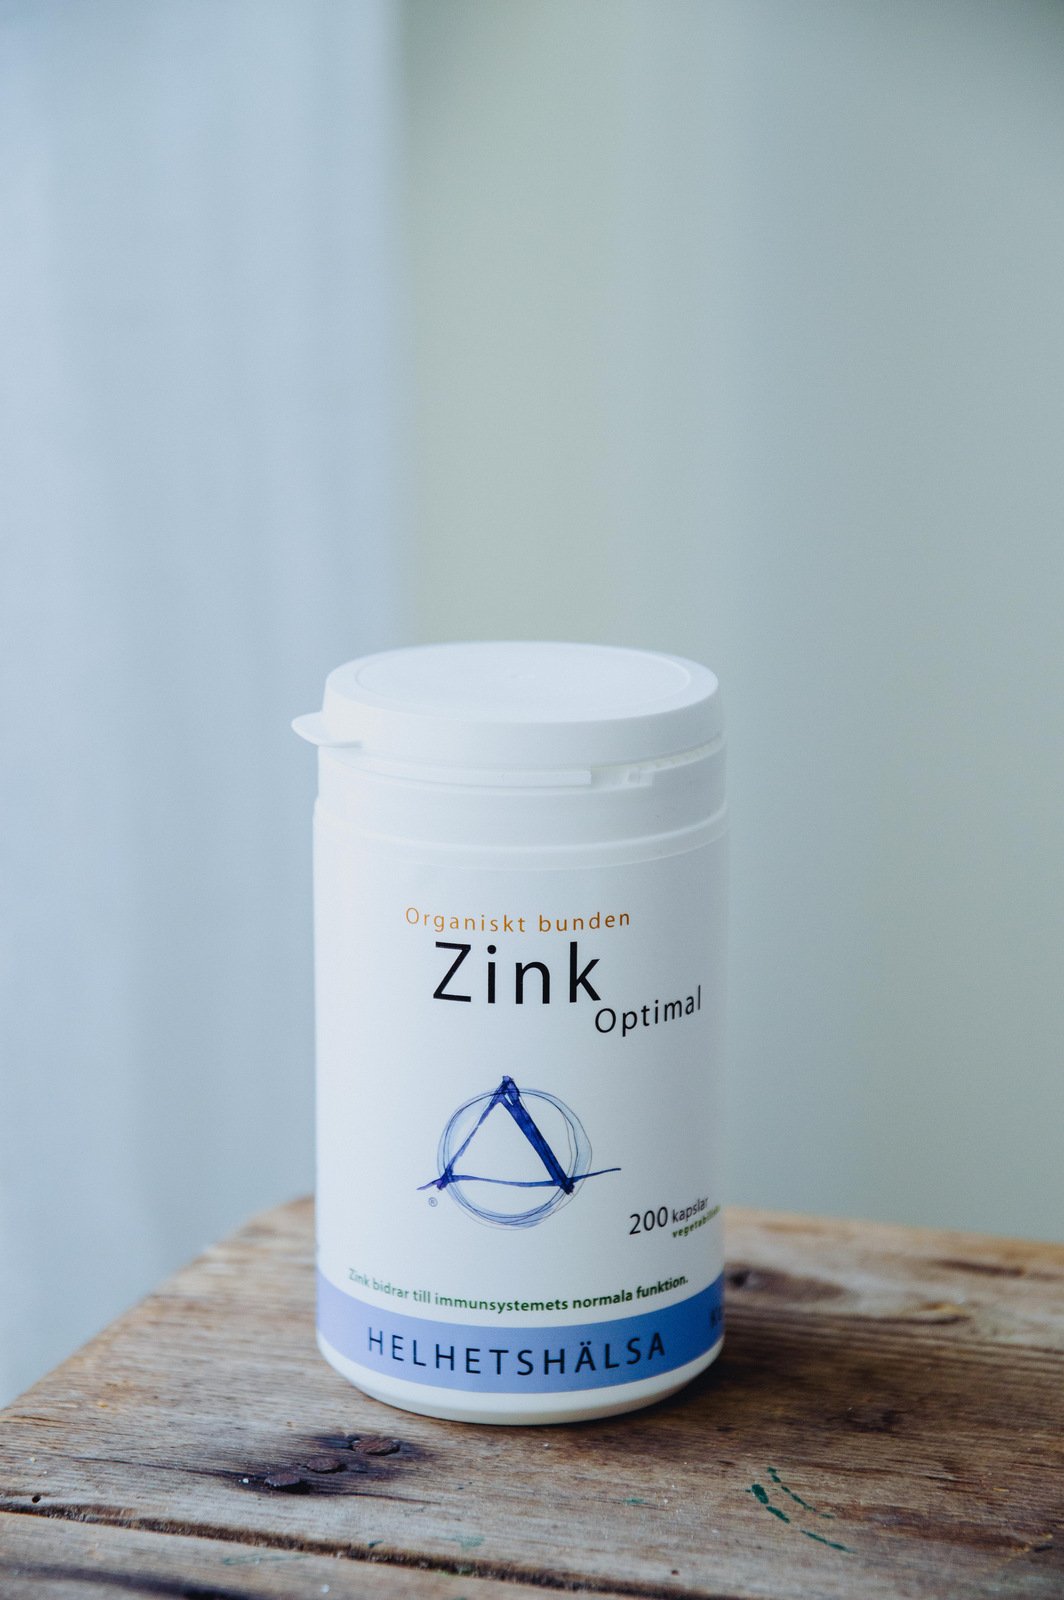 Helhetshälsa ZinkOptimal 25 mg 100 kapslar